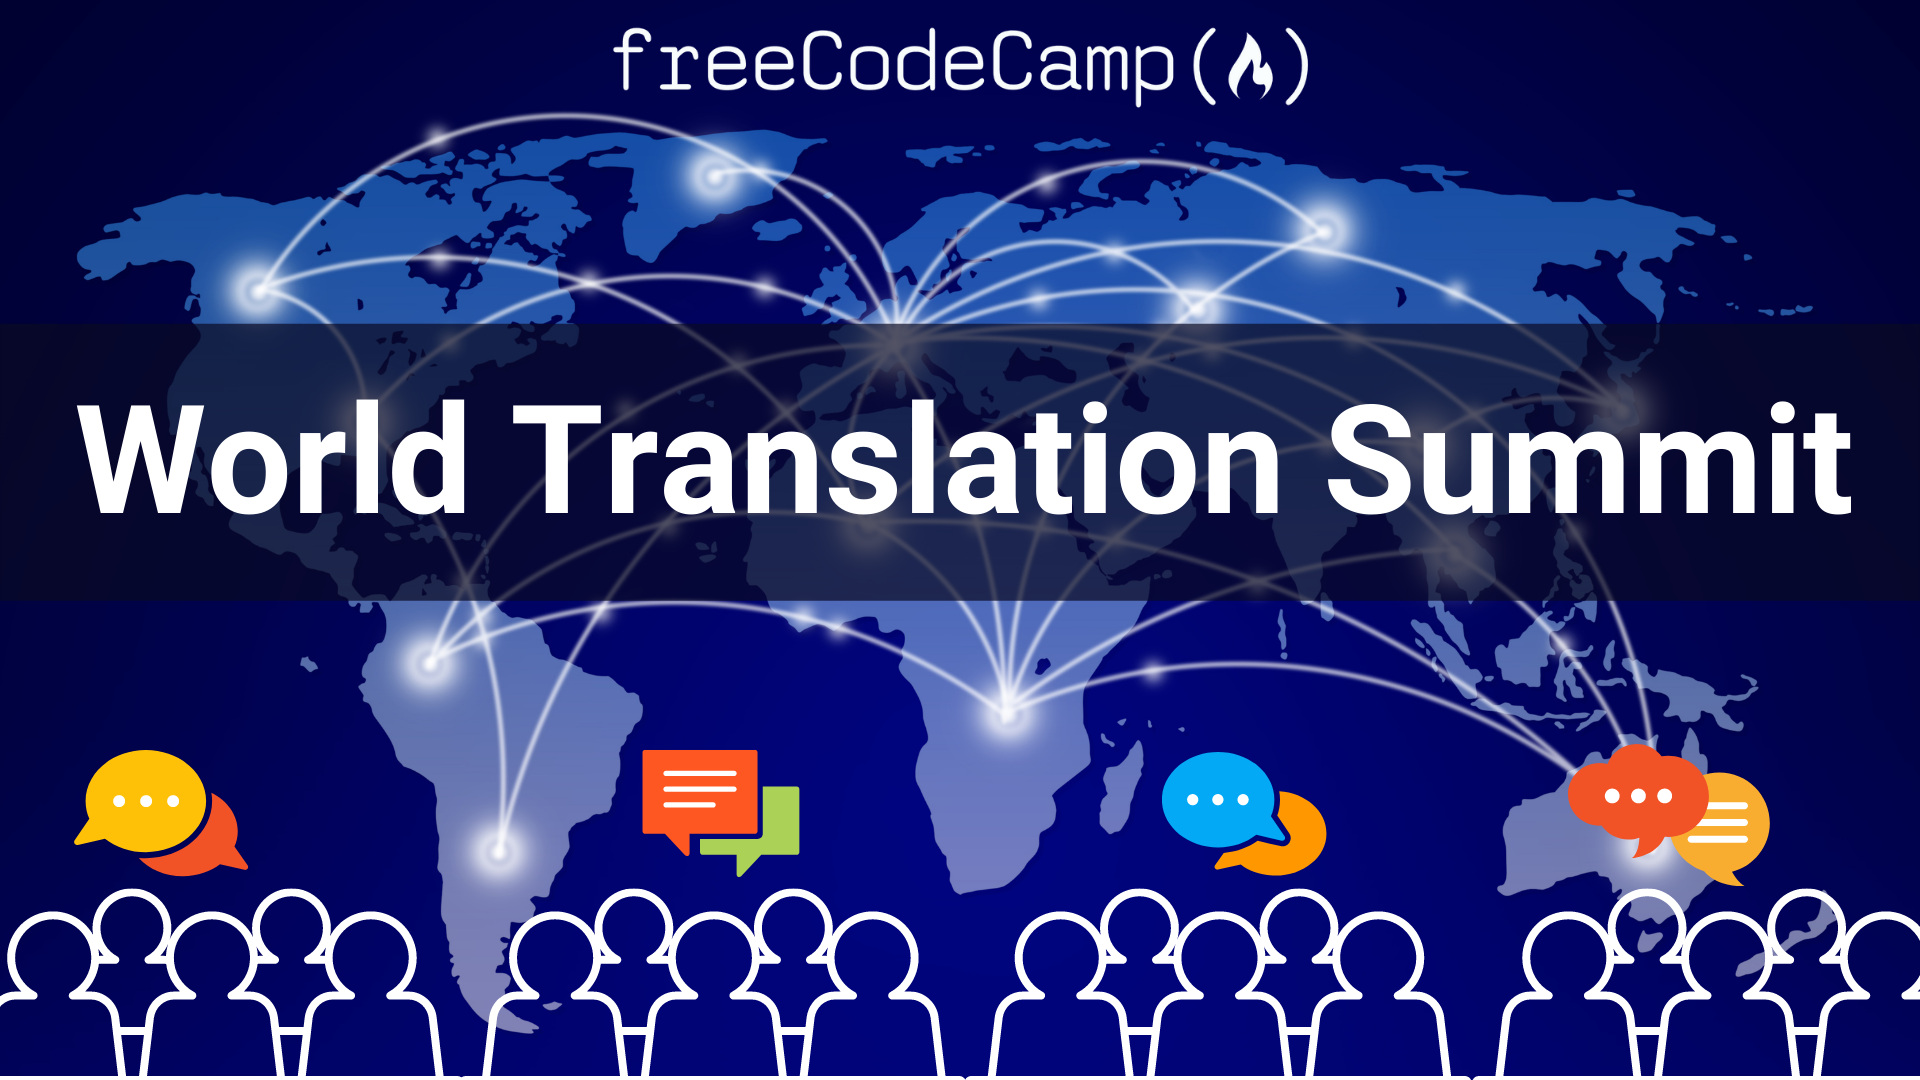 World Translation Summit 2022 do freeCodeCamp – participe do esforço para a tradução